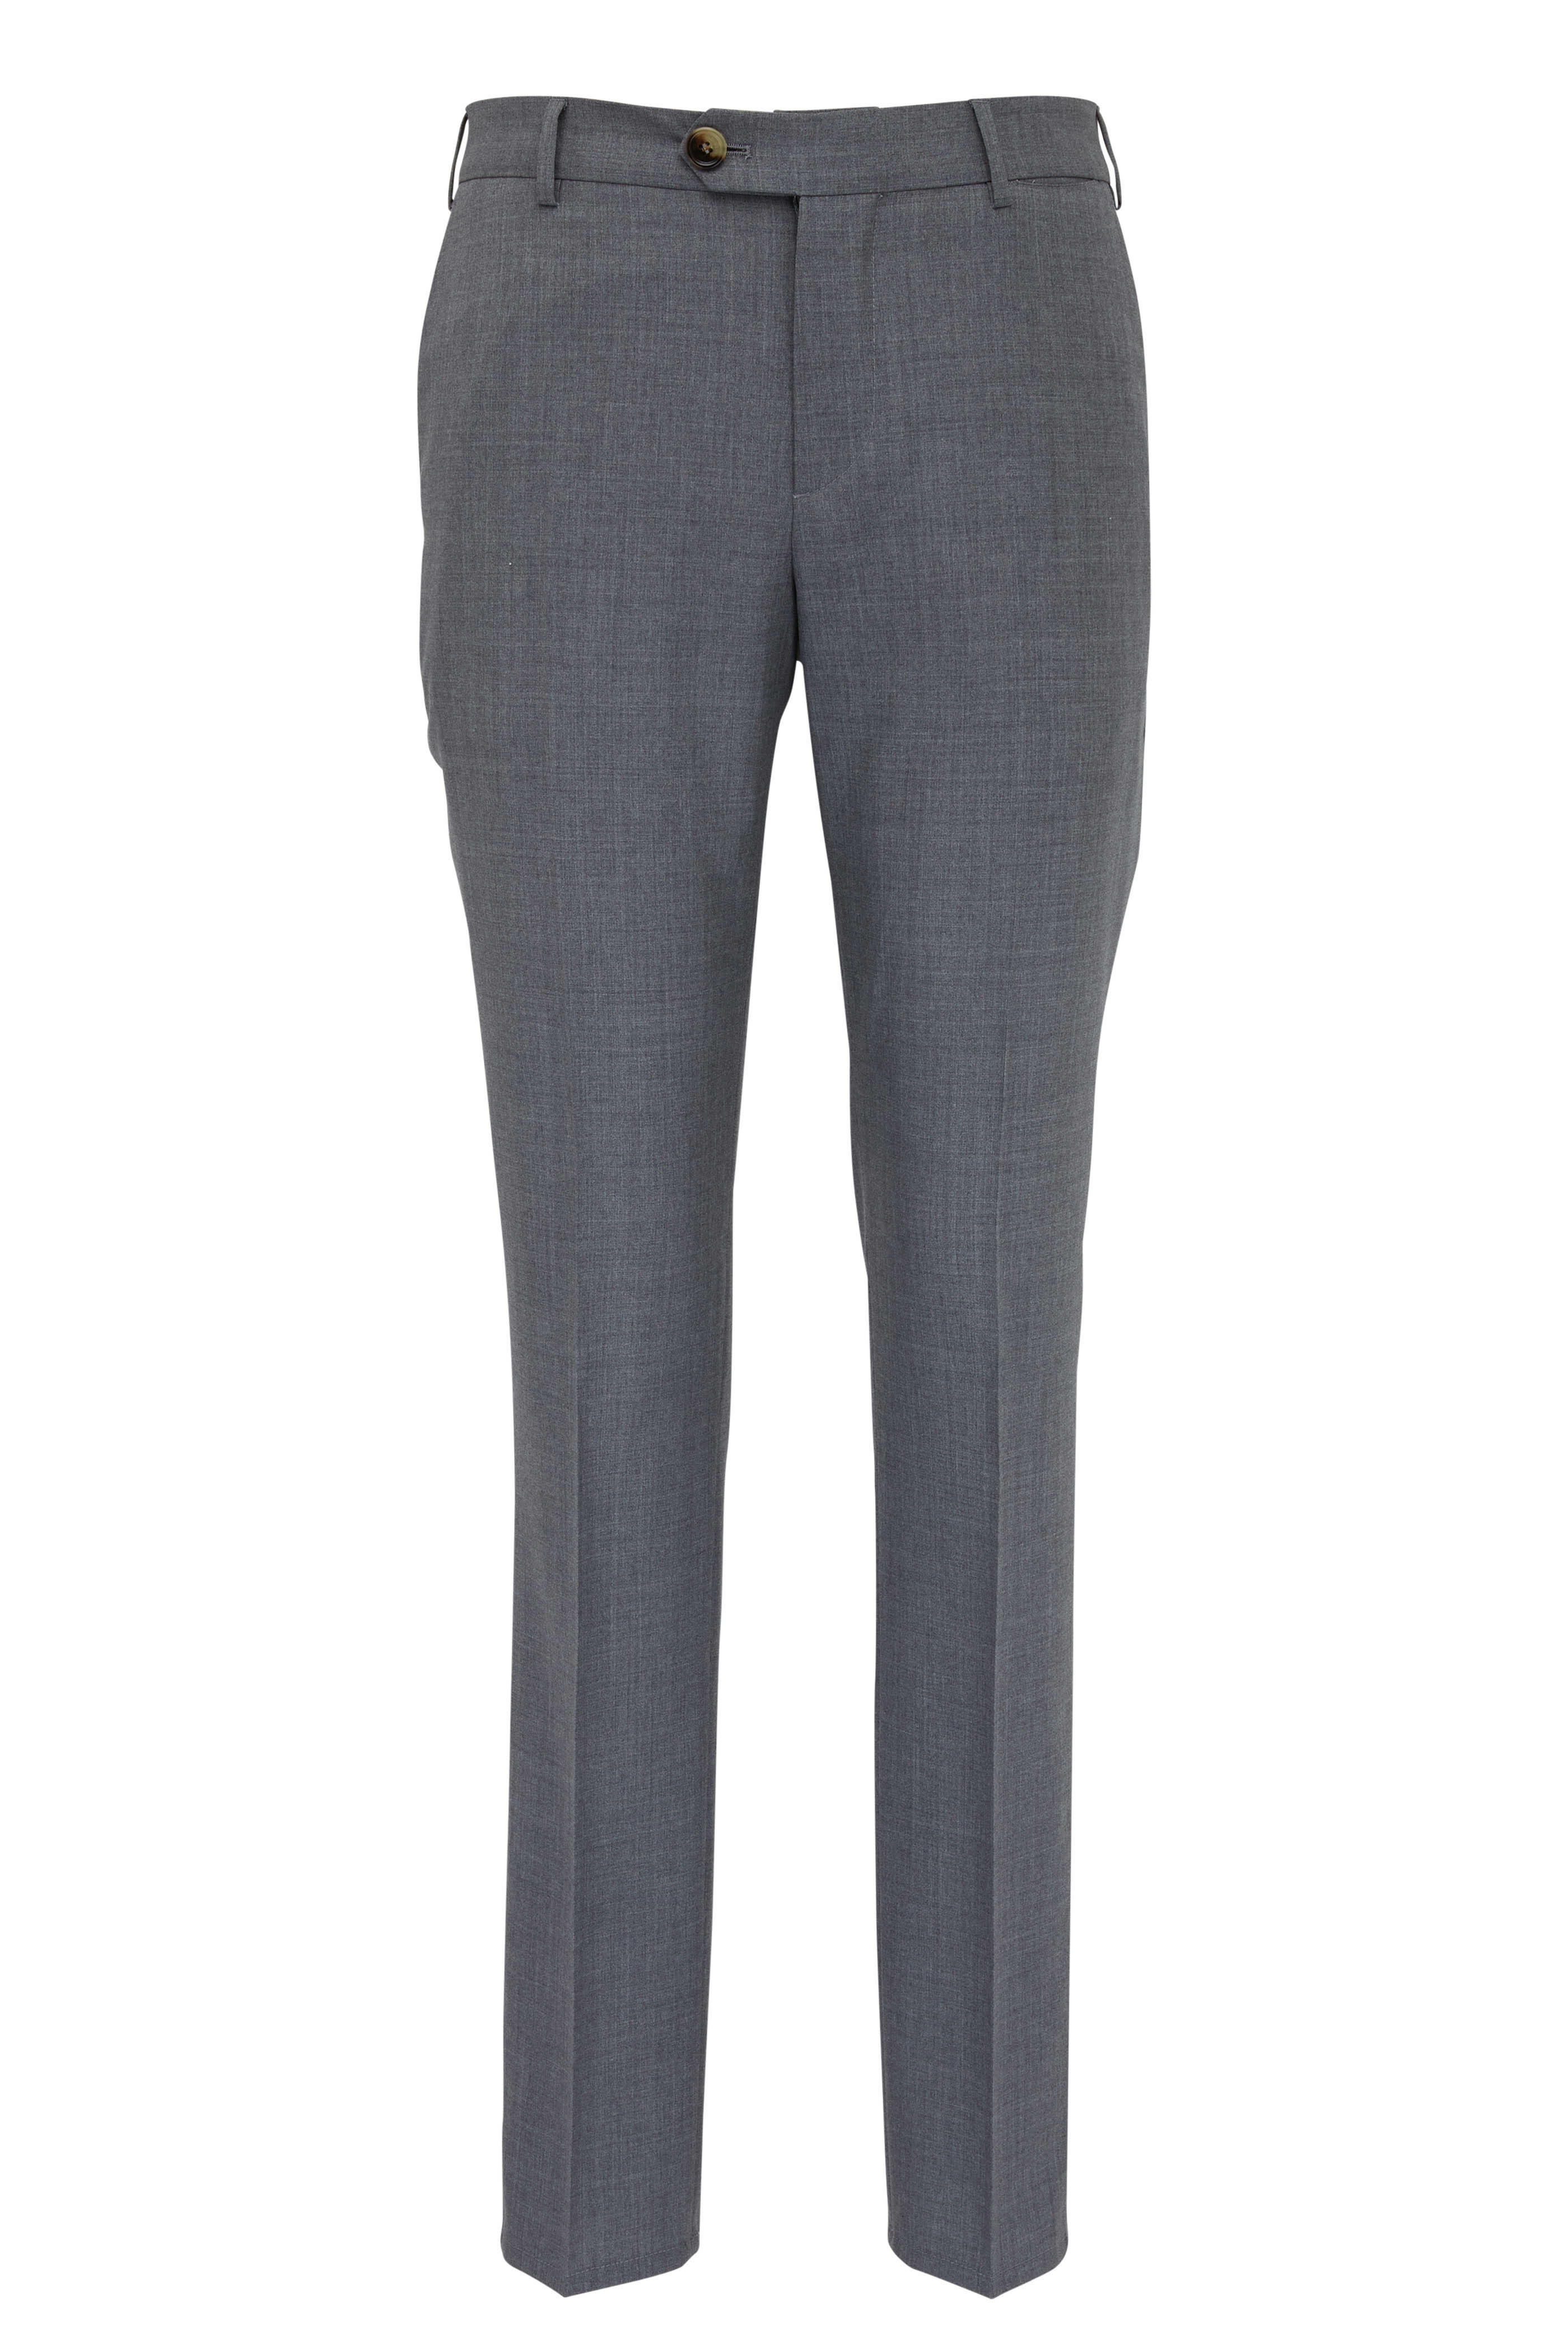 Brunello Cucinelli - Gray Lightweight Virgin Wool Flat Front Pant